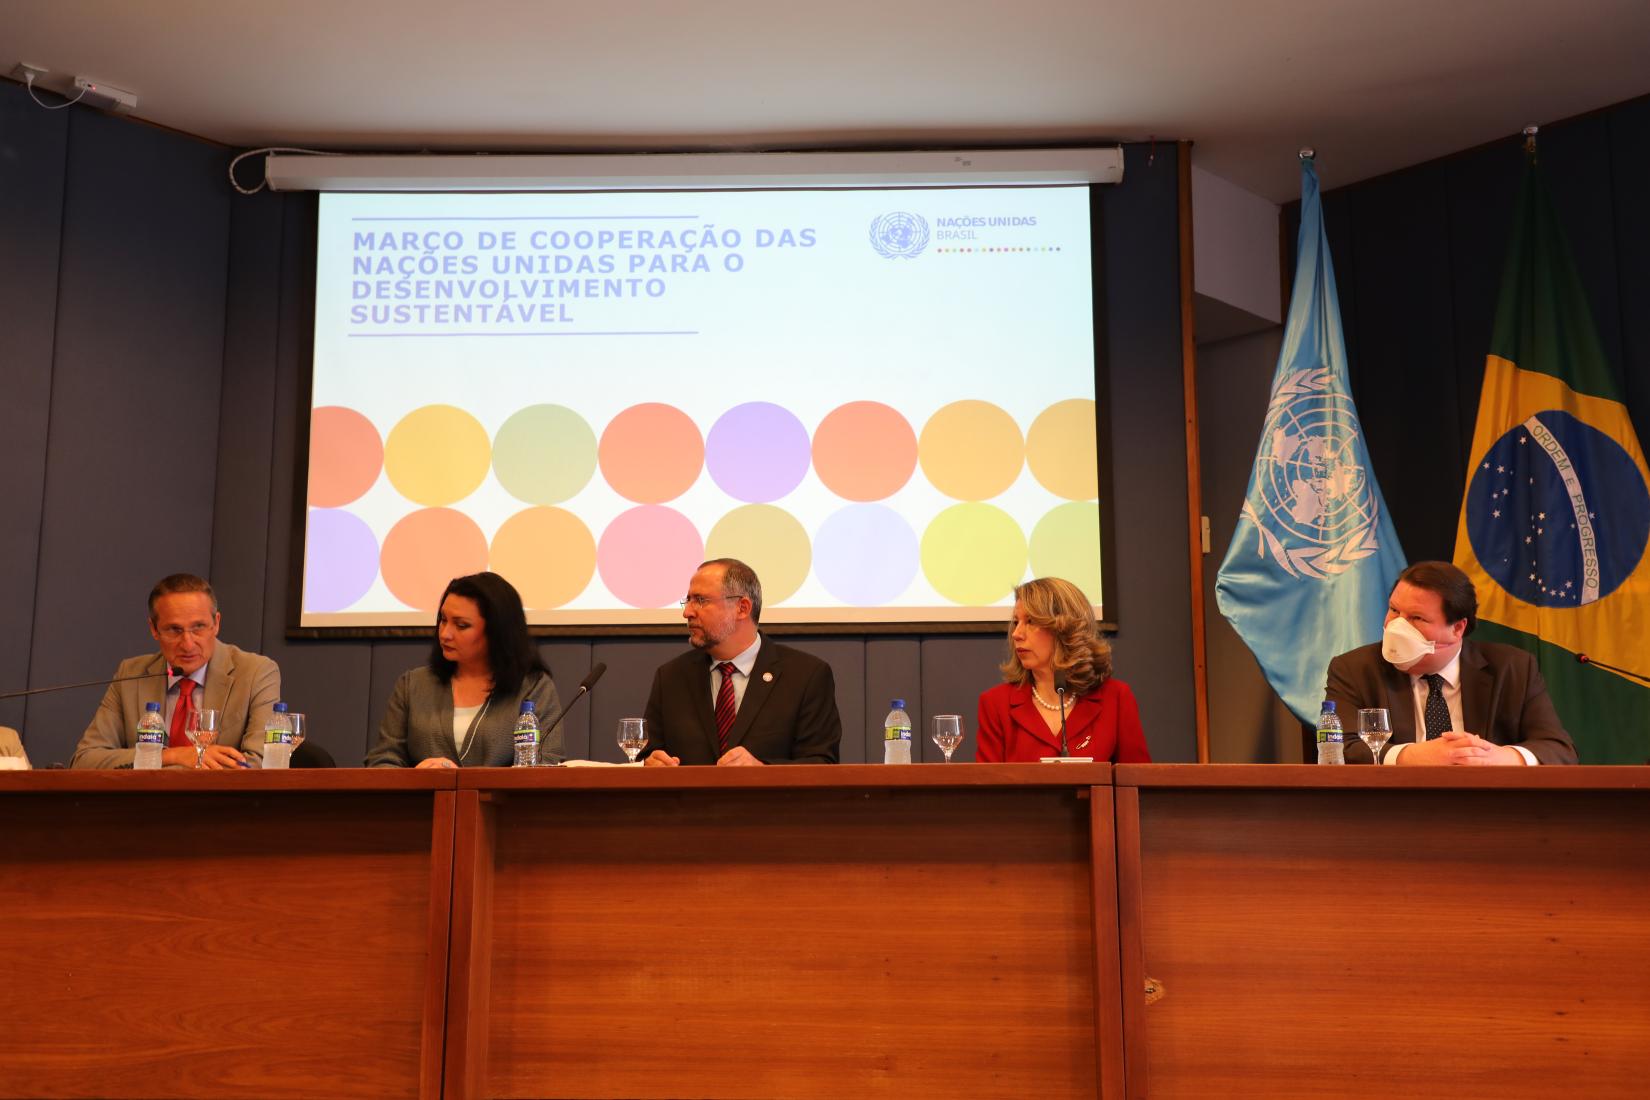 Representantes de cinco entidades do Sistema ONU apresentaram os eixos temáticos do novo Marco de Cooperação